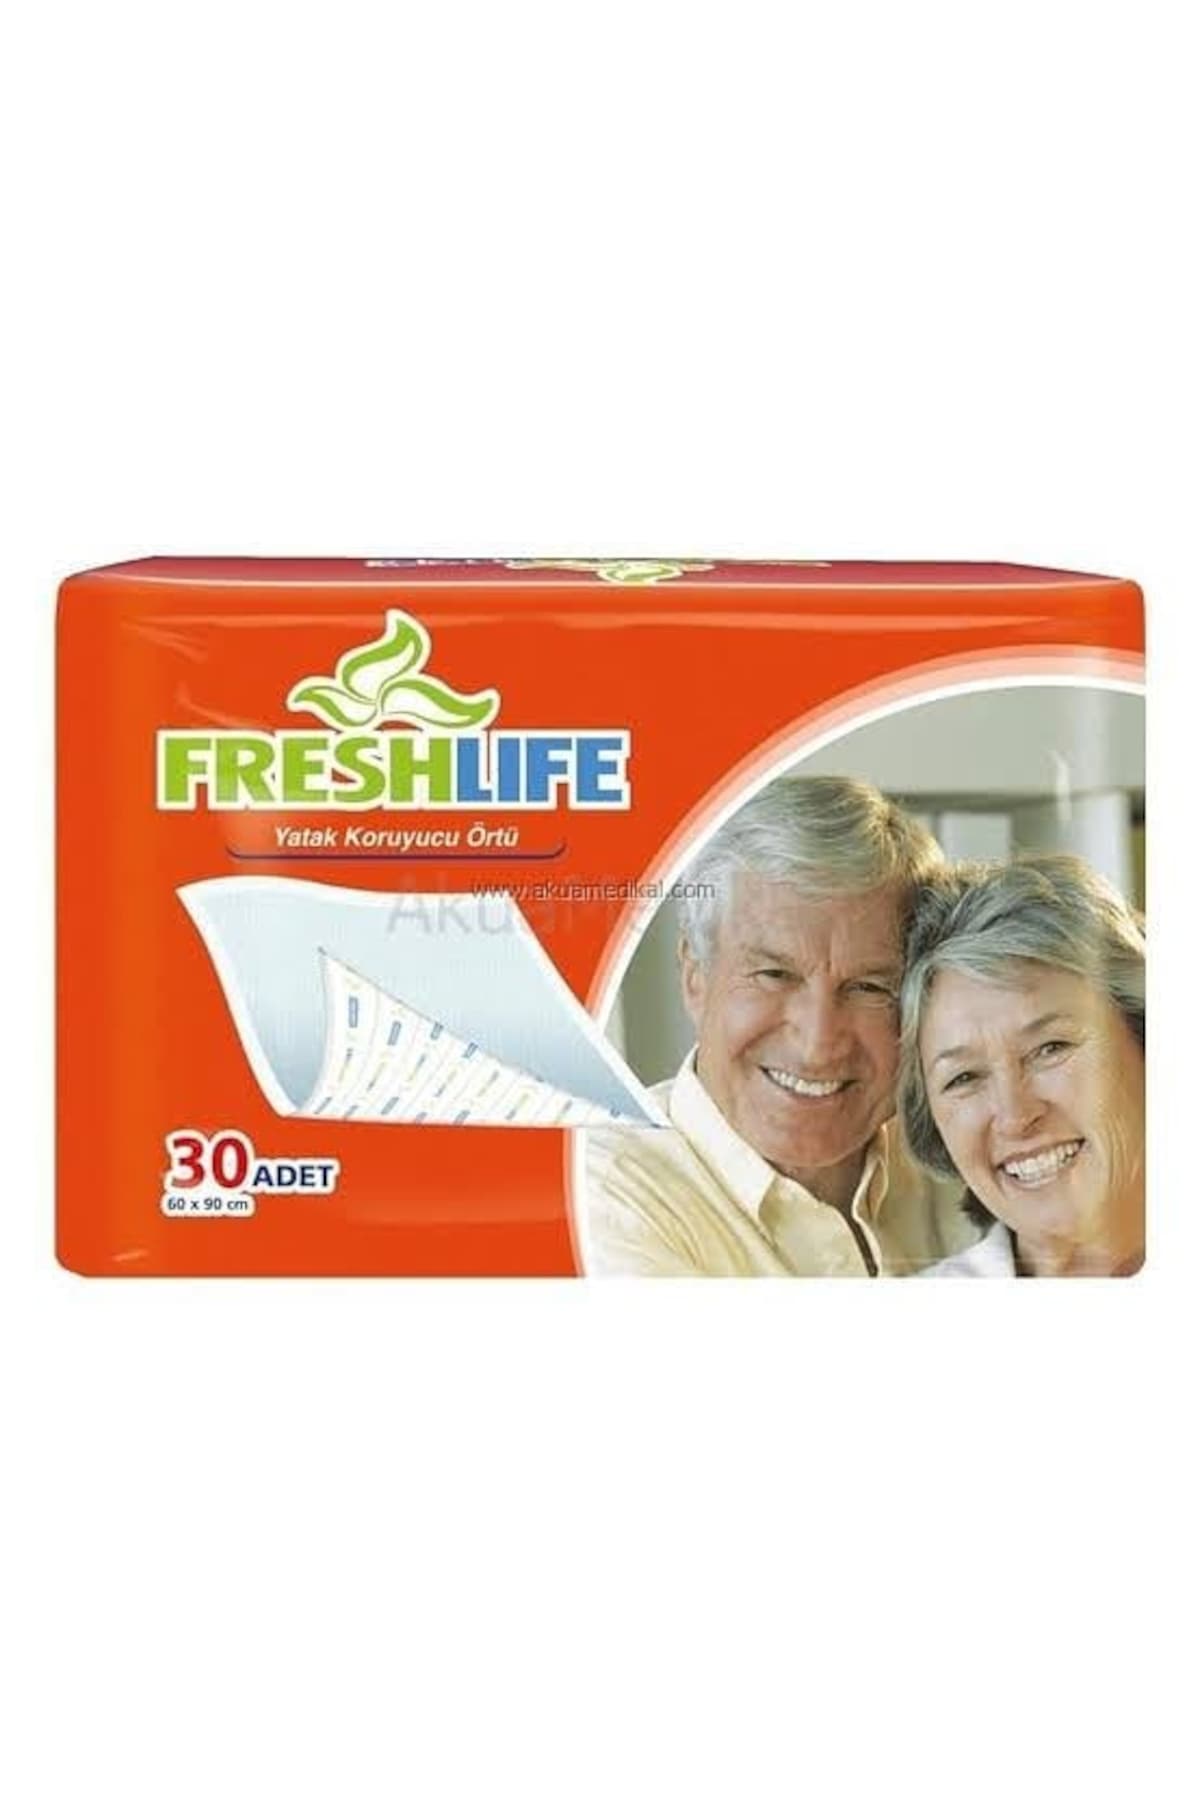 Fresh Life Yatak Koruyucu Örtü / Hasta Alt Serme Bezi 60X90 Fiyatları